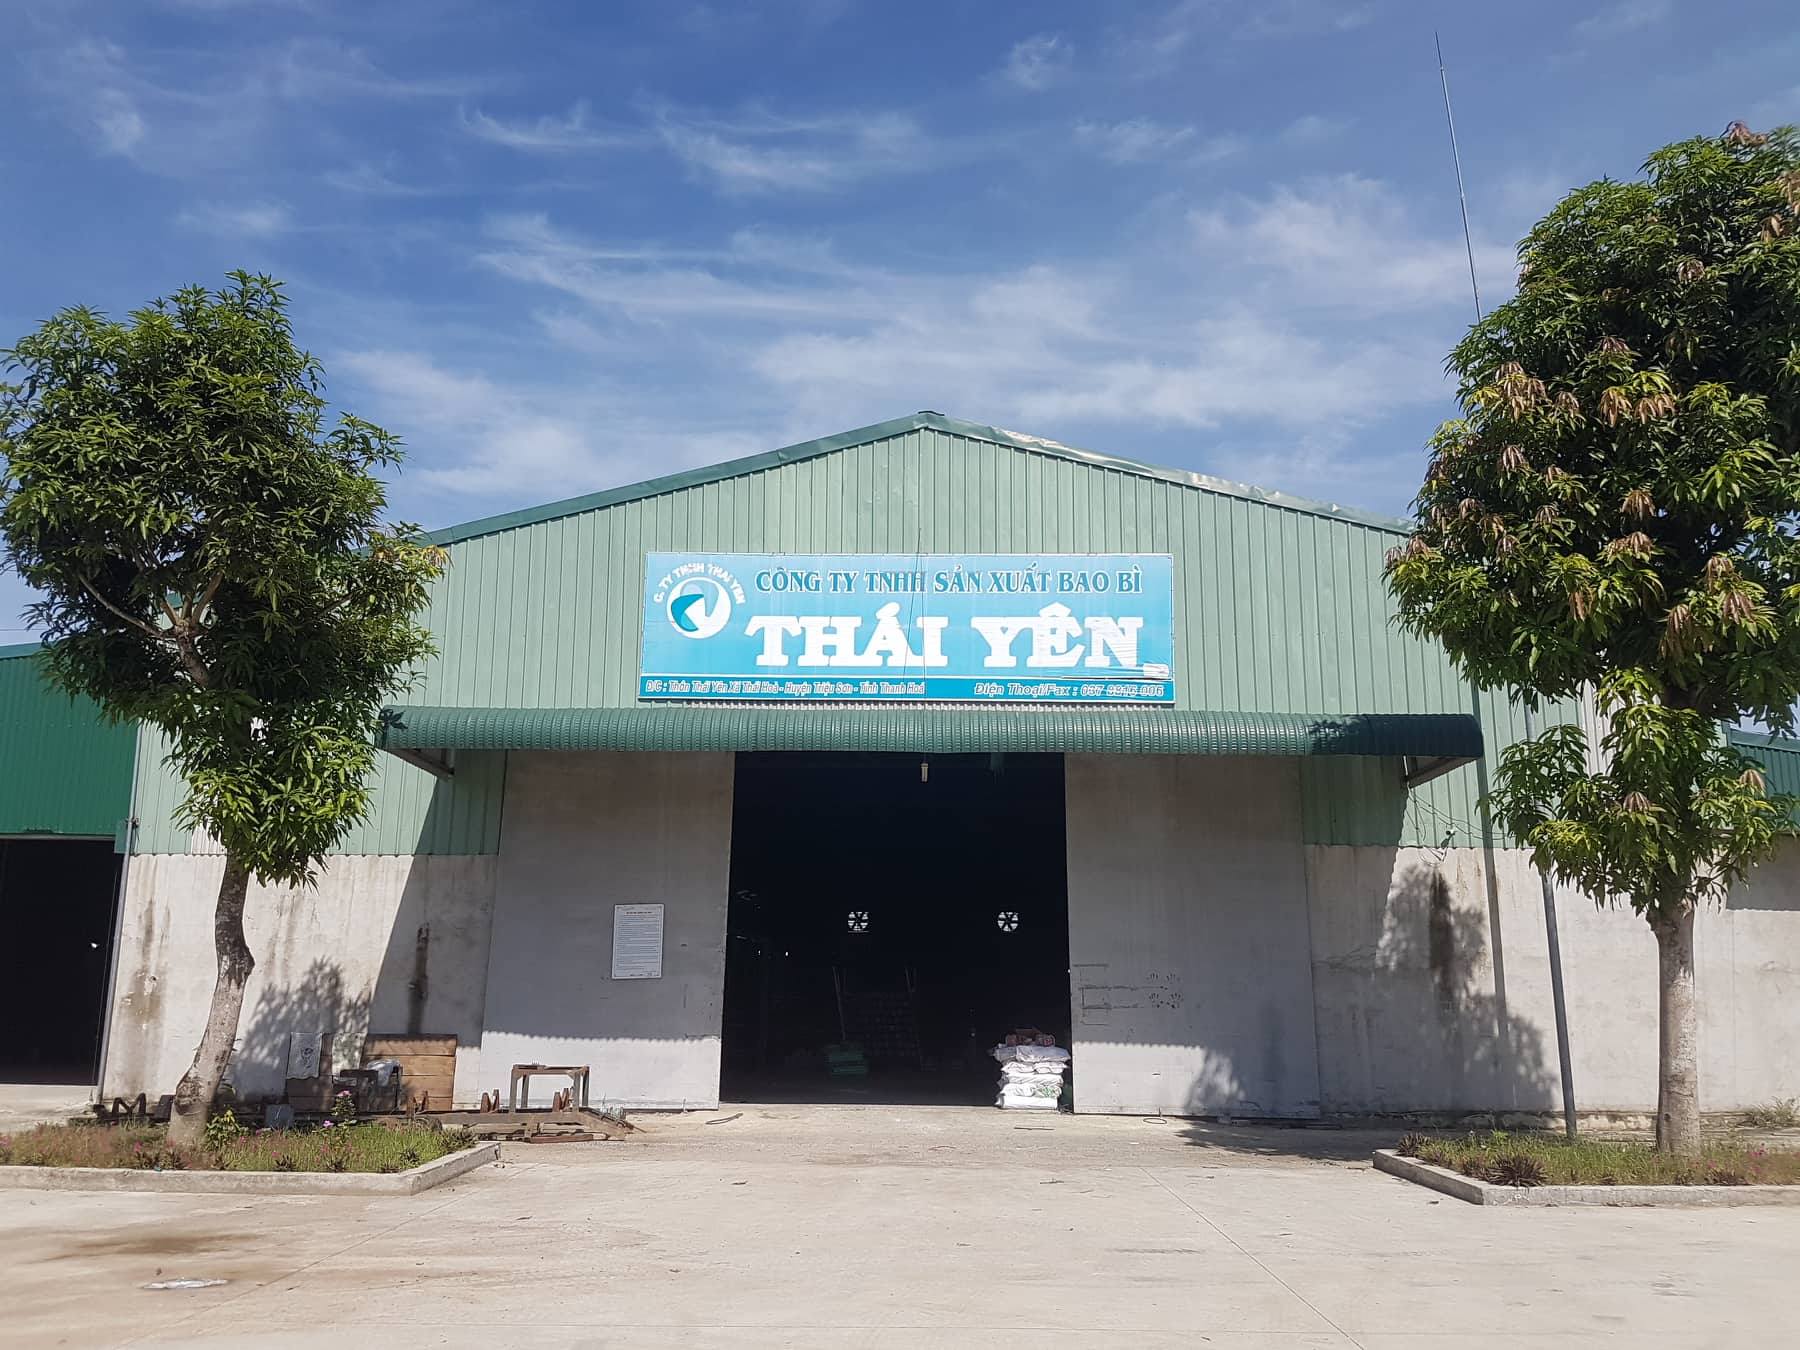 Thanh Hóa: Dân ''kêu cứu'' vì loạt cơ sở giặt và tái chế bao bì gây ô nhiễm tại xã Thái Hòa